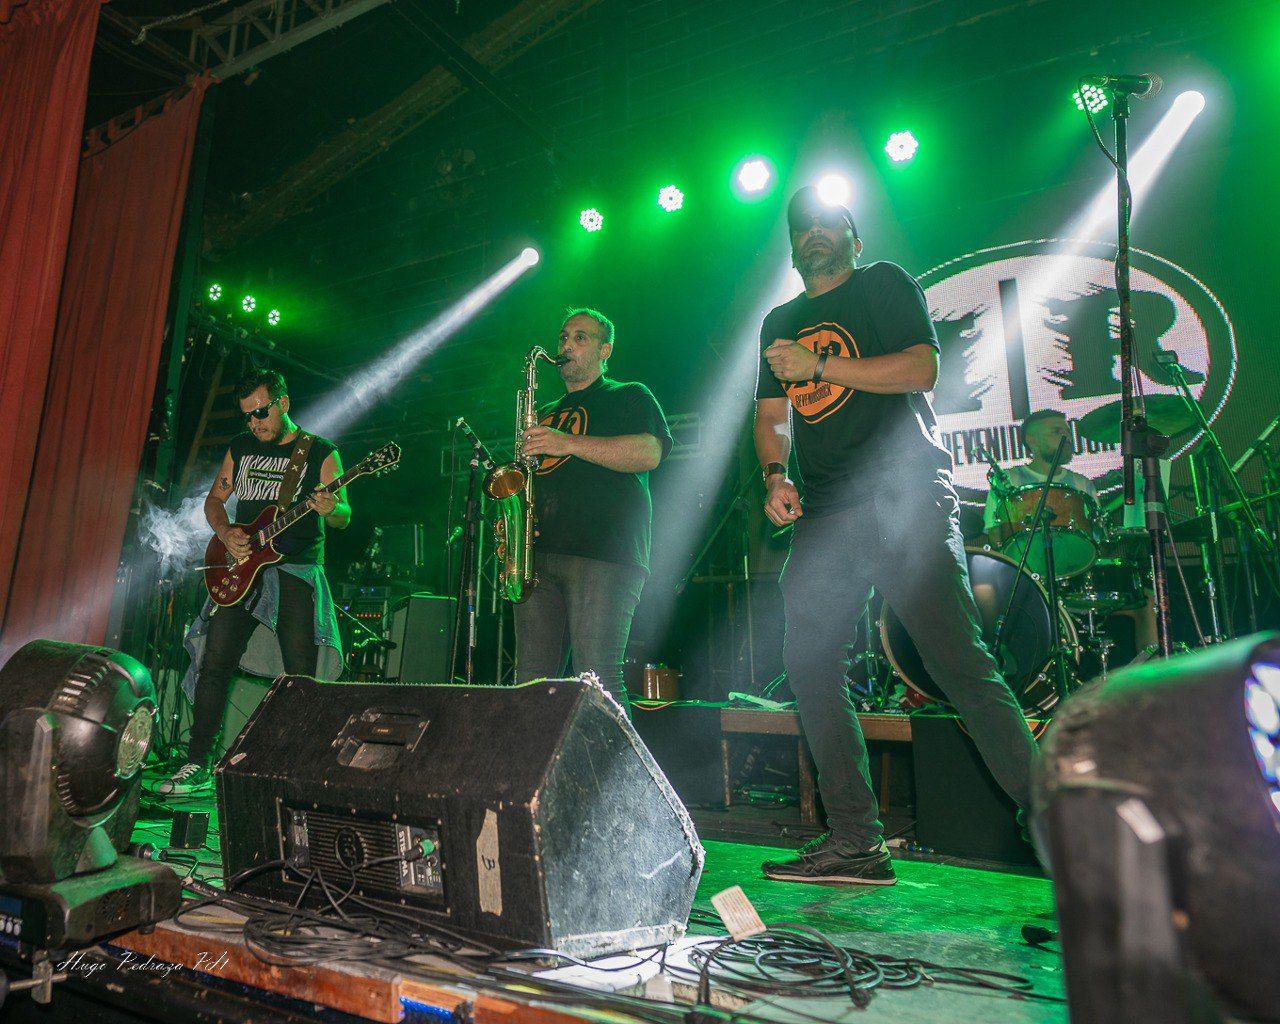 Revenidos Rock forja su historia con canciones que hablan de la cotidianeidad